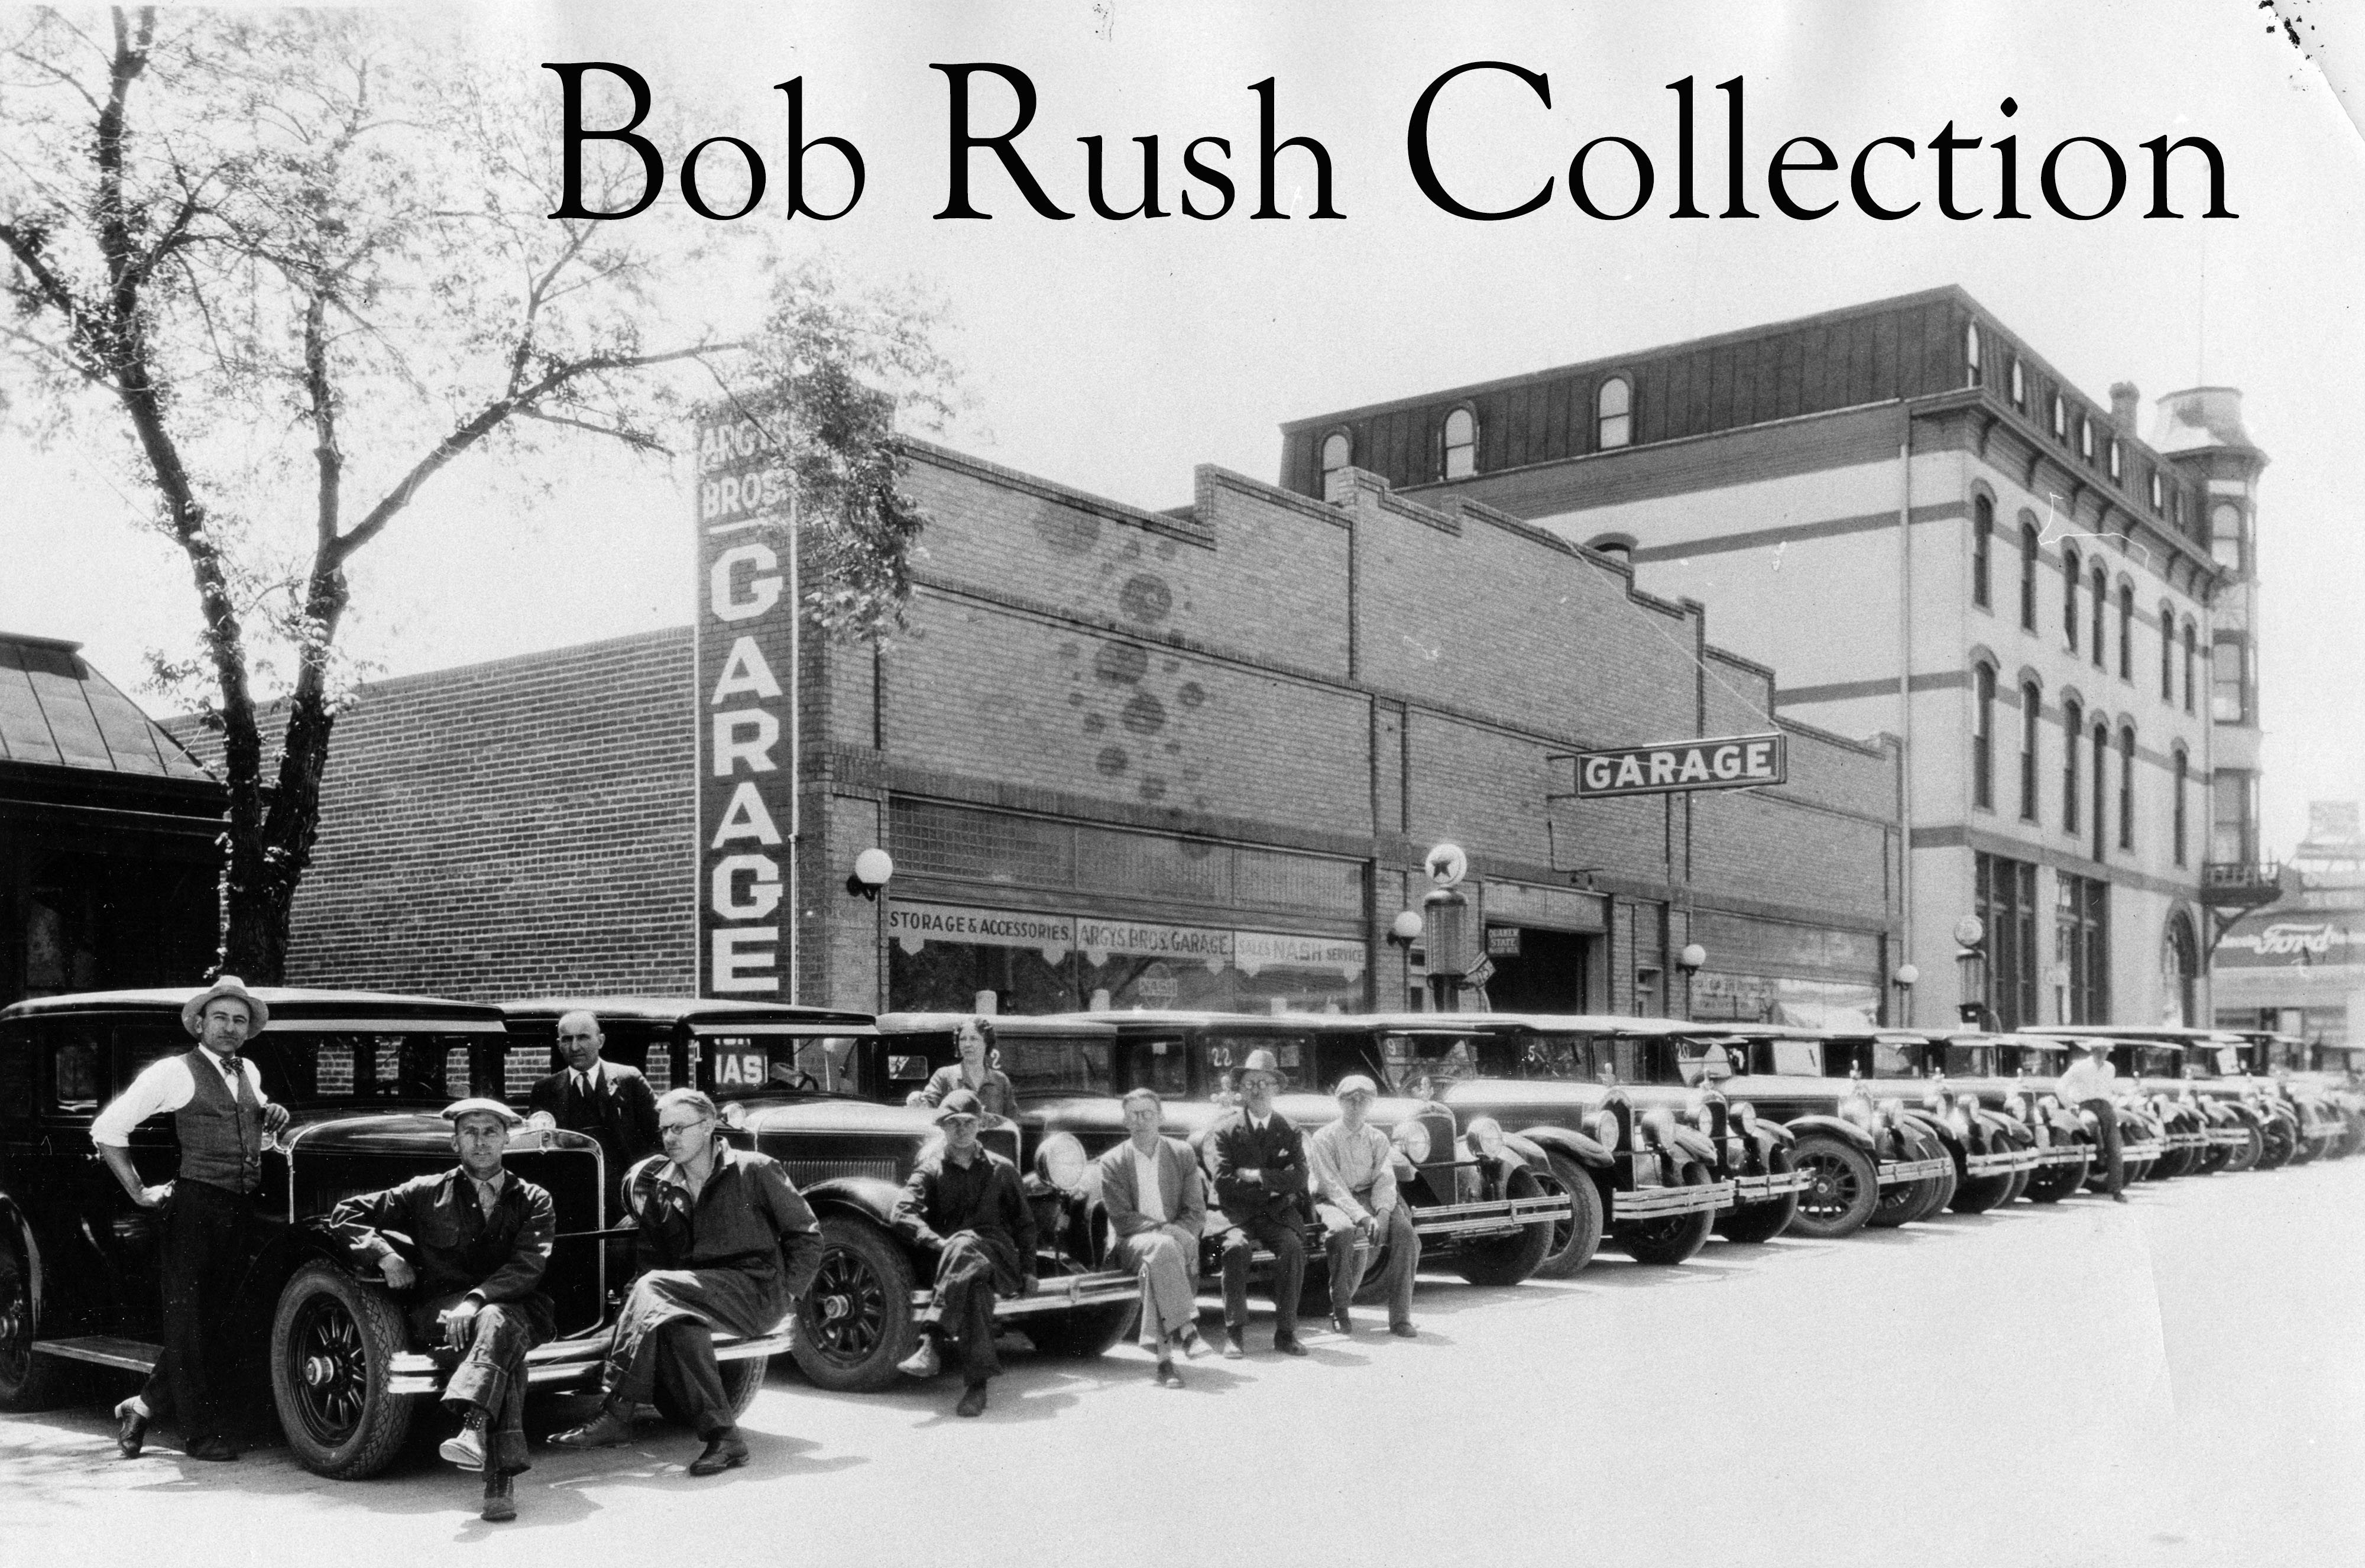 Bob Rush Collection|urlencode